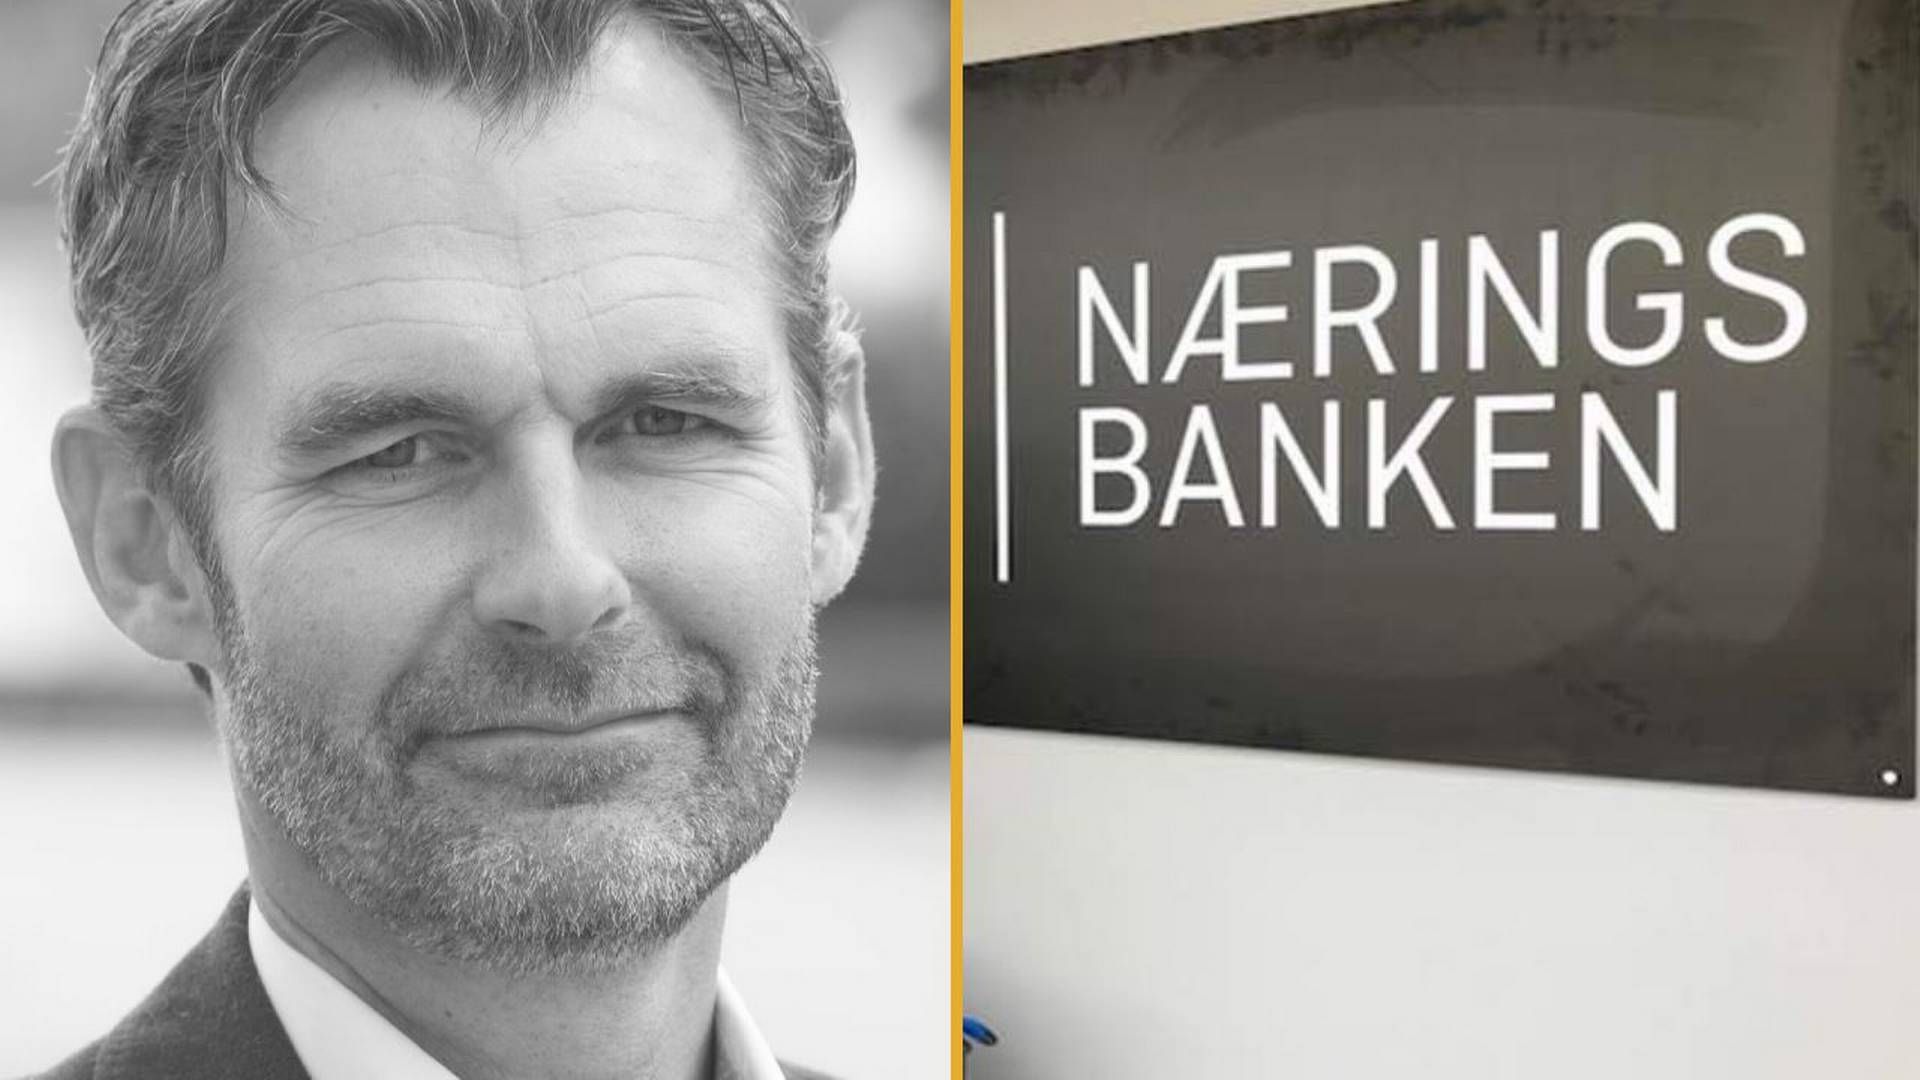 Banksjef Johan Linn i Næringsbanken har måttet sette alle utlån på pause etter at Finanstilsynet har beordret en uavhengig gjennomgang av bankens utlånsportefølje.